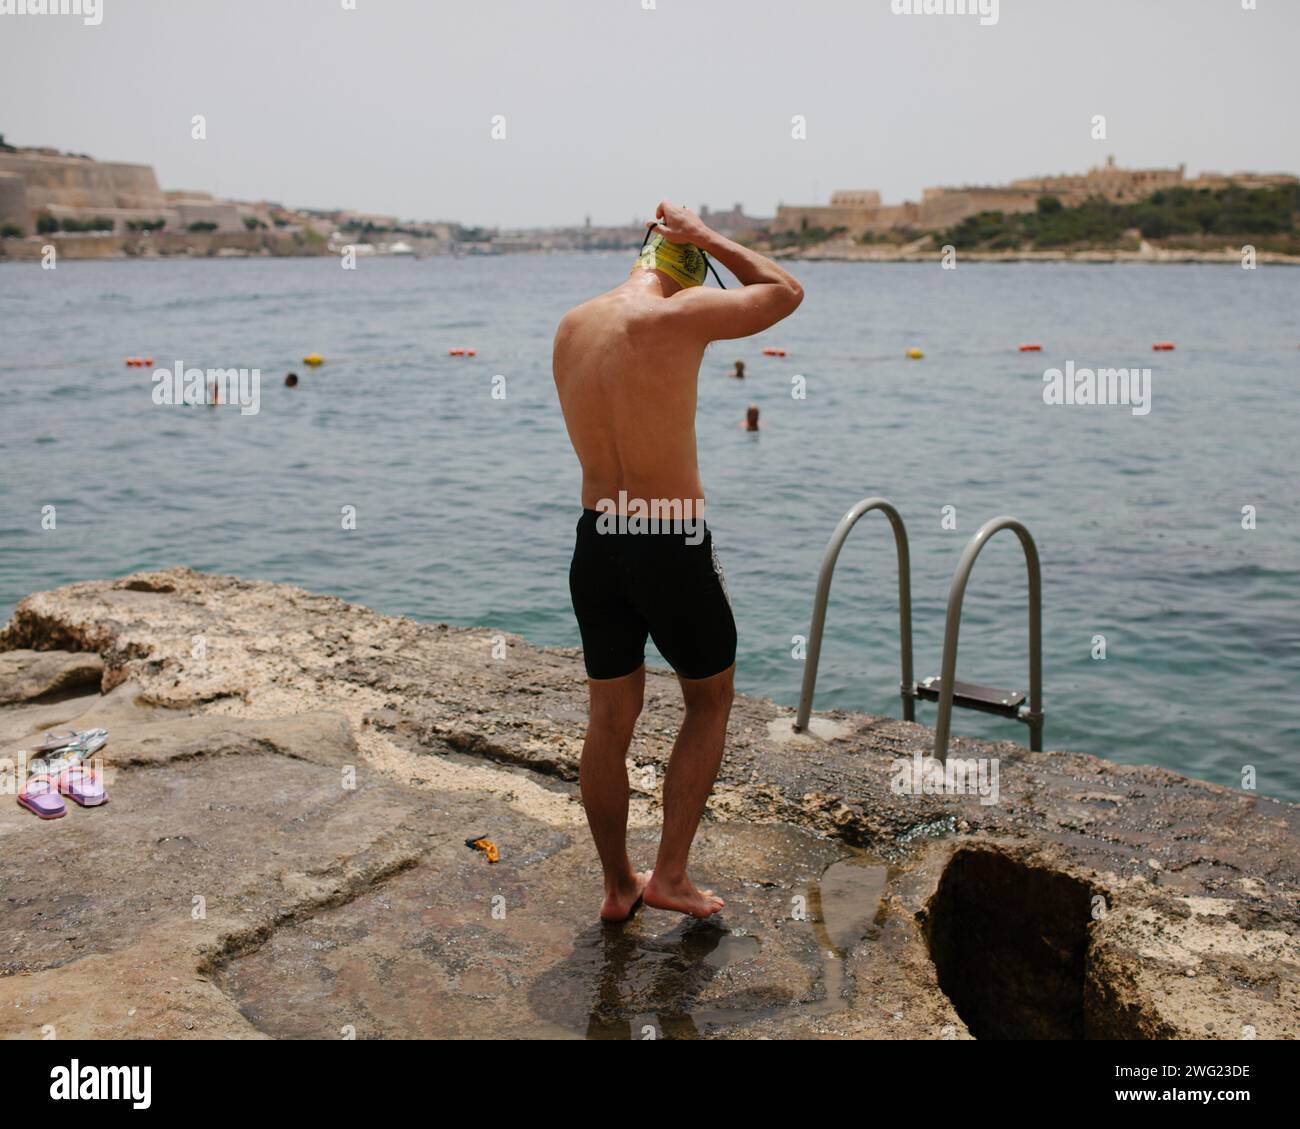 Un nuotatore si prepara ad entrare in mare alla spiaggia di Tigne Point, Malta. La Valletta può essere vista sullo sfondo. Foto Stock